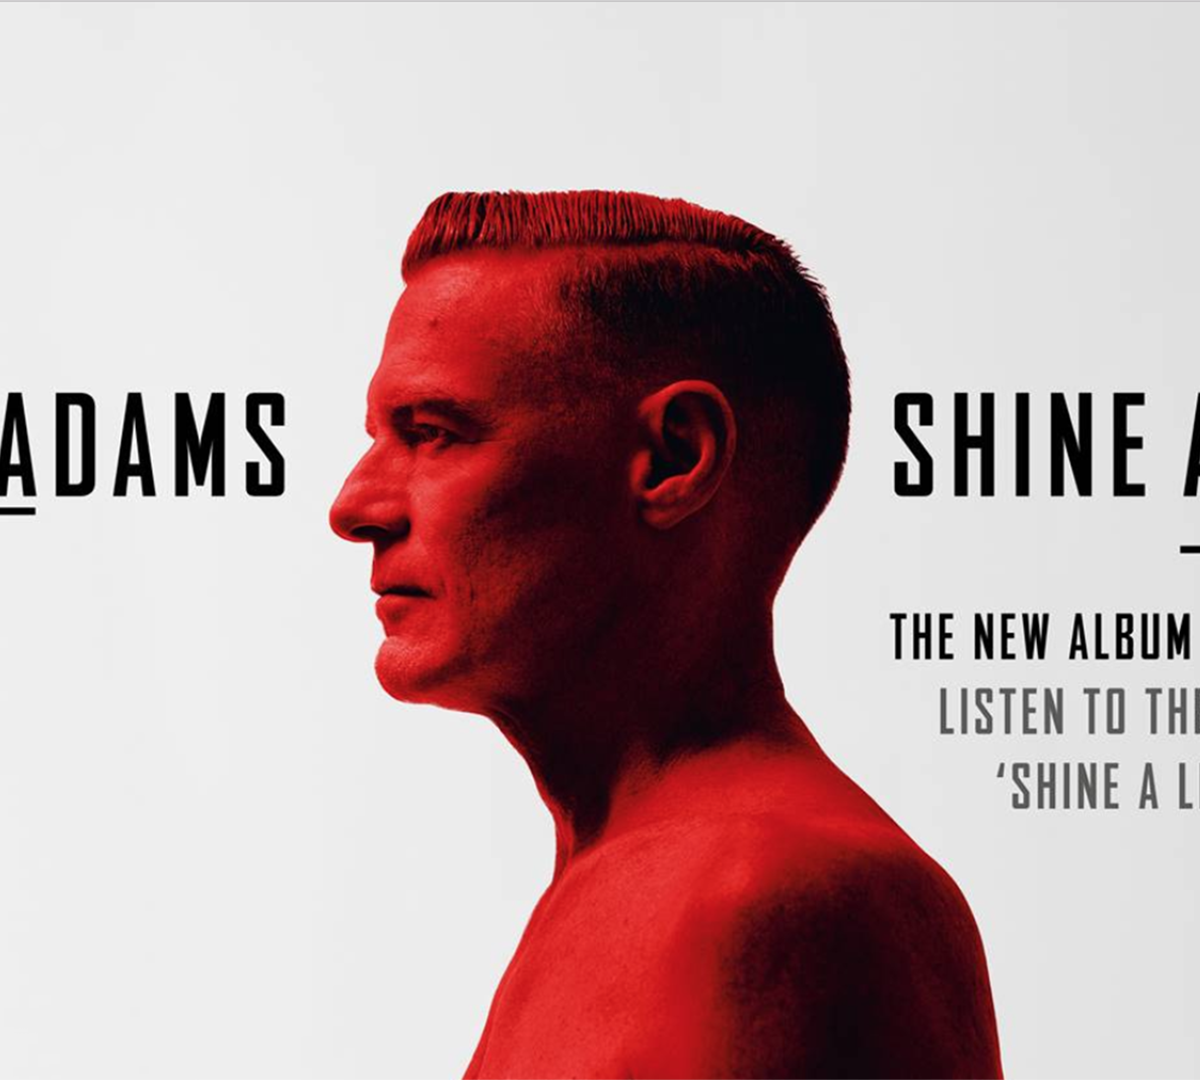 Bryan Adams Announces New Album, Shine A Light, Out March 1st 2019